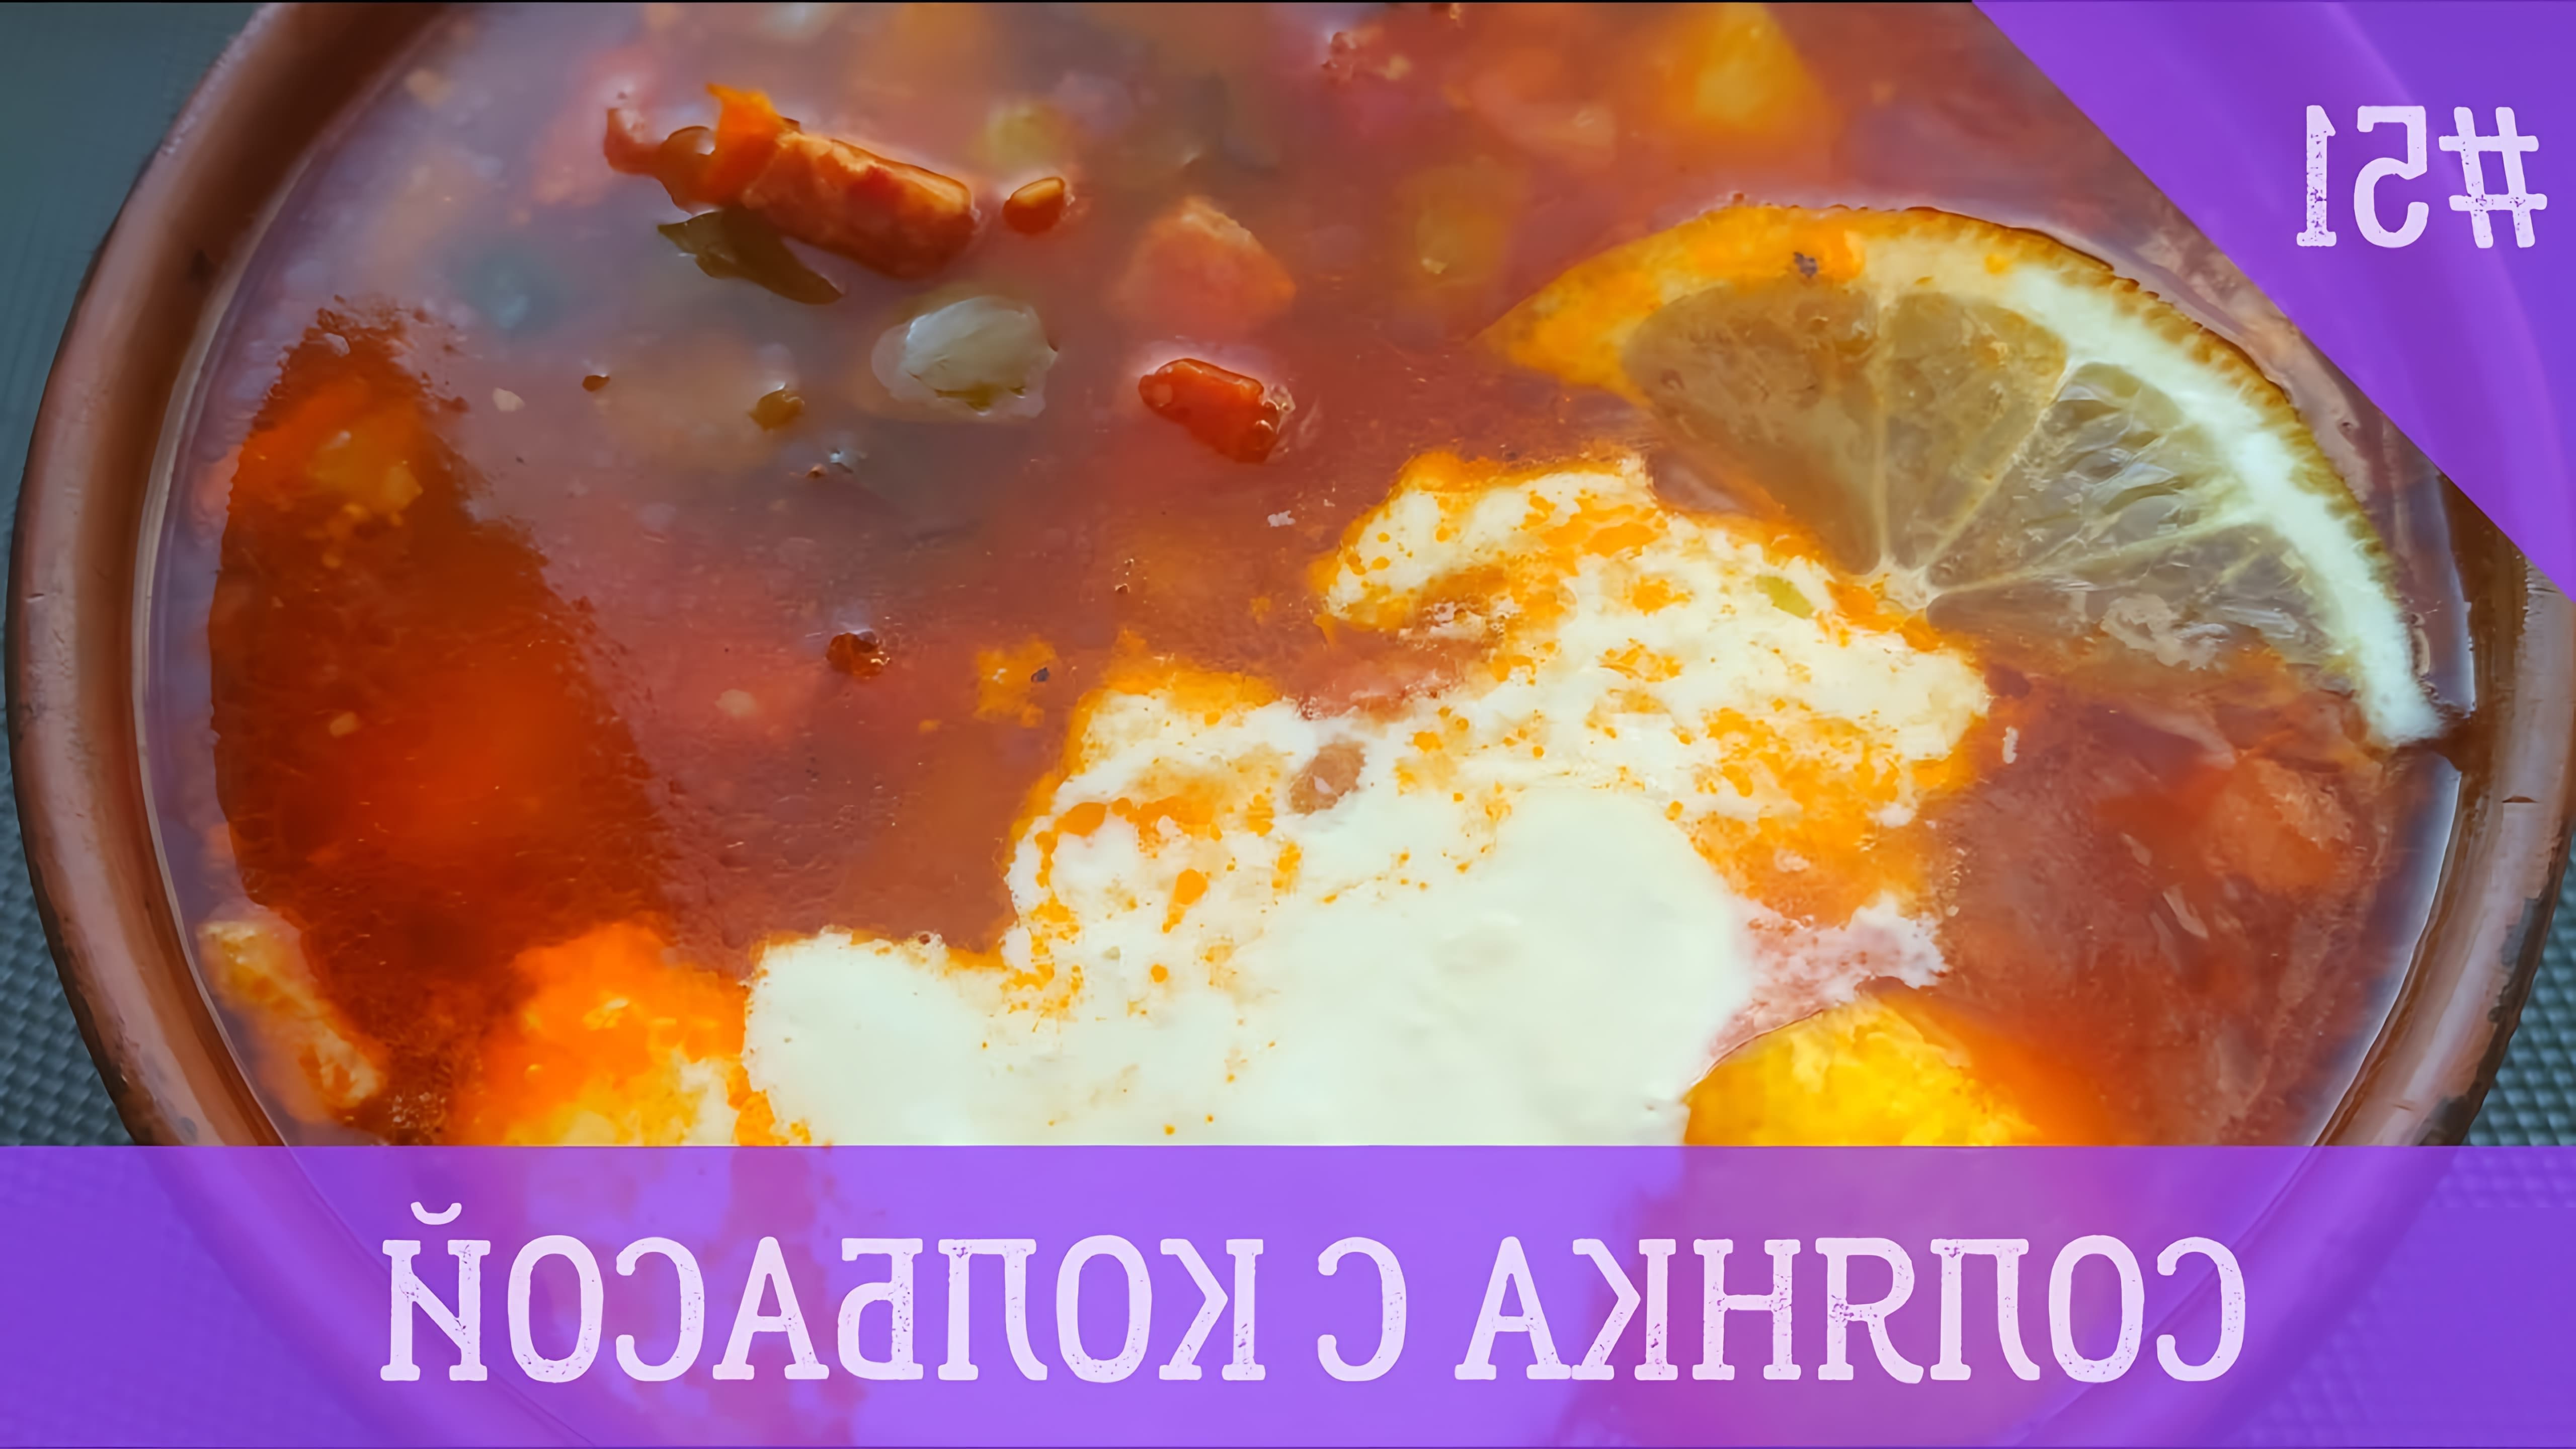 В этом видео демонстрируется рецепт приготовления солянки с колбасой, картошкой и солеными огурцами